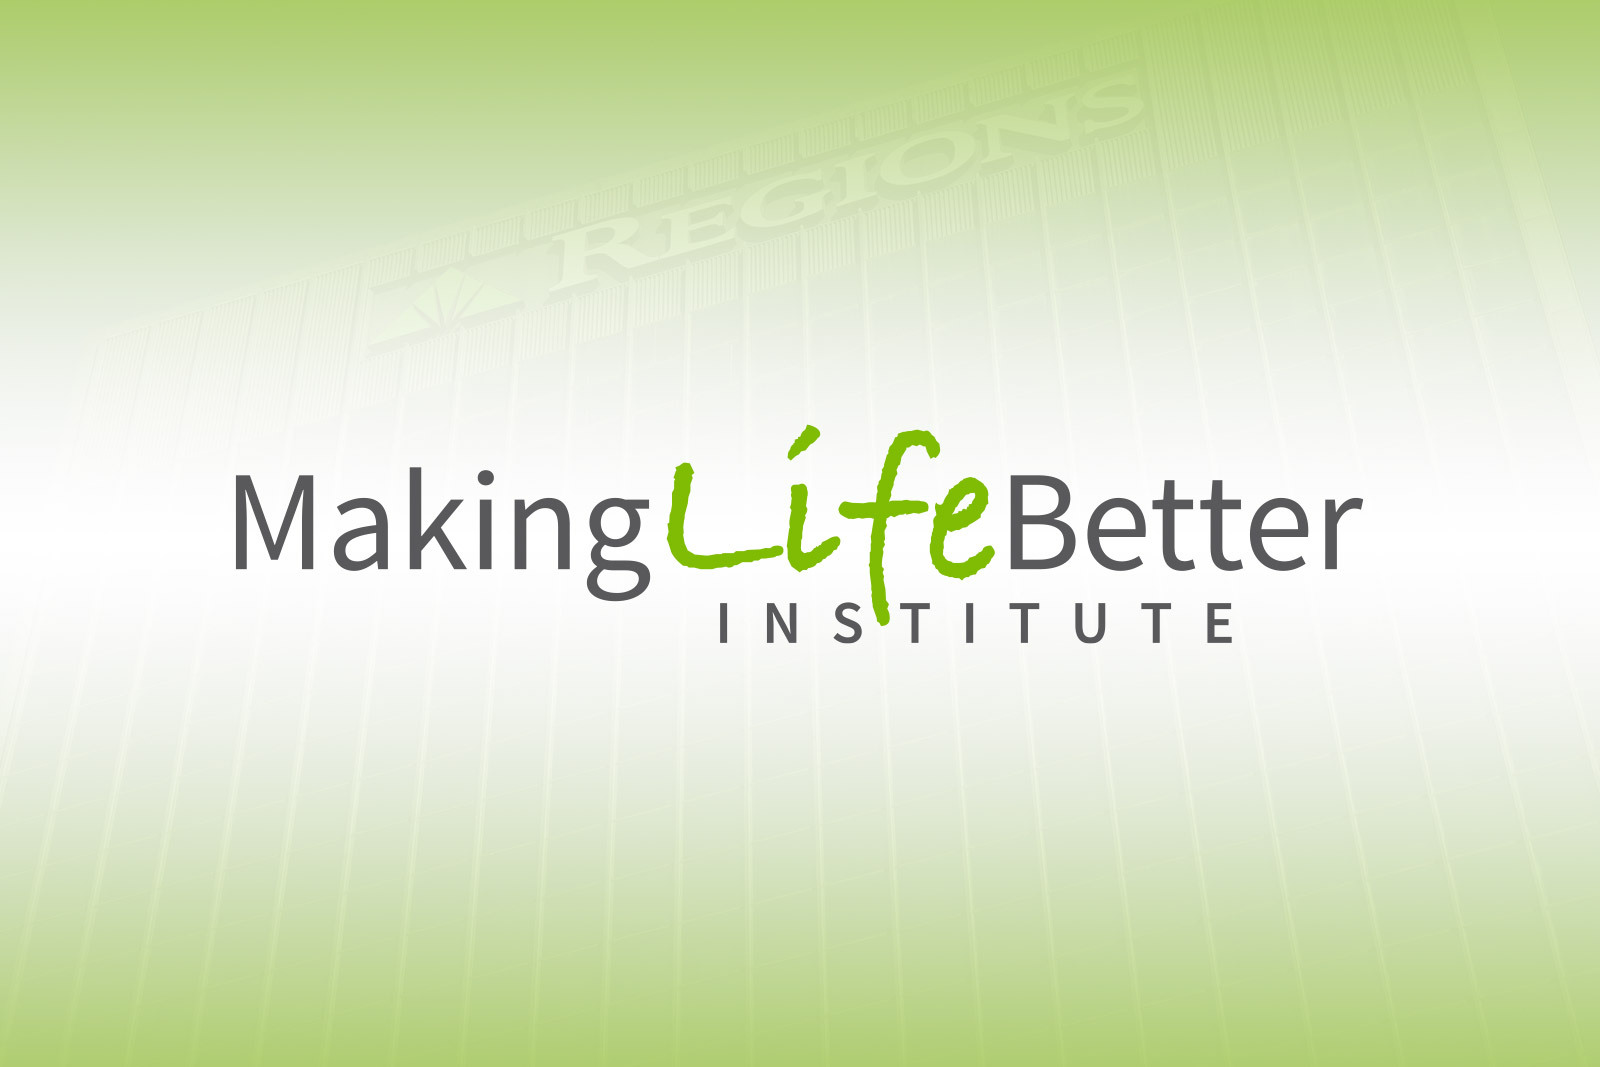 Making Life Better Institute logo